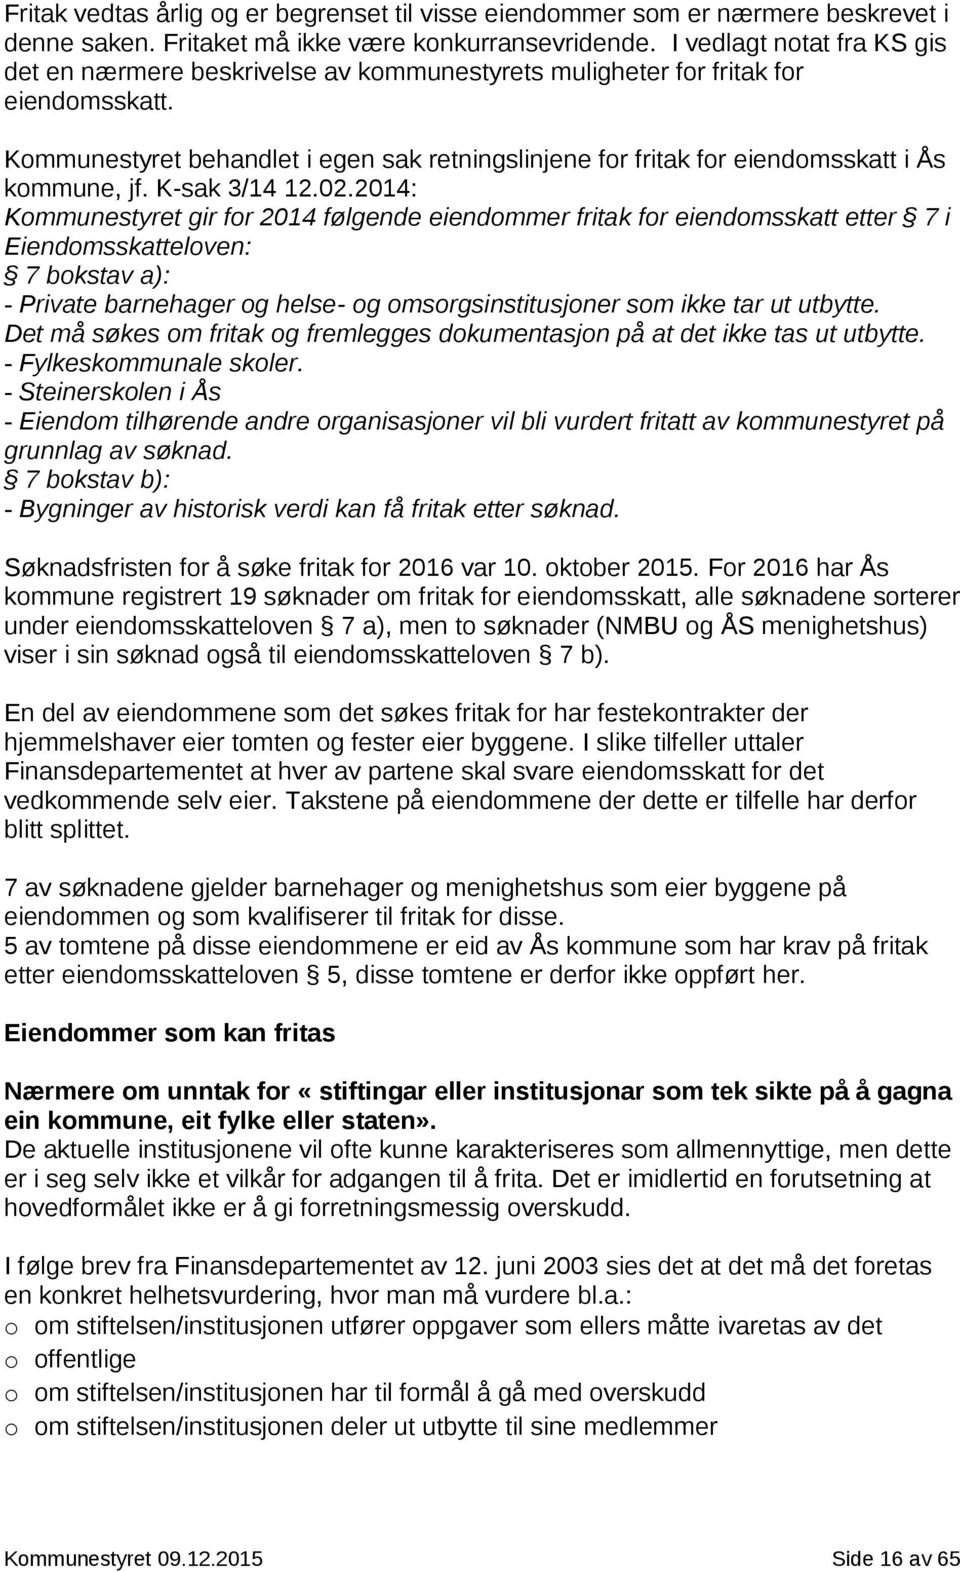 Kommunestyret behandlet i egen sak retningslinjene for fritak for eiendomsskatt i Ås kommune, jf. K-sak 3/14 12.02.